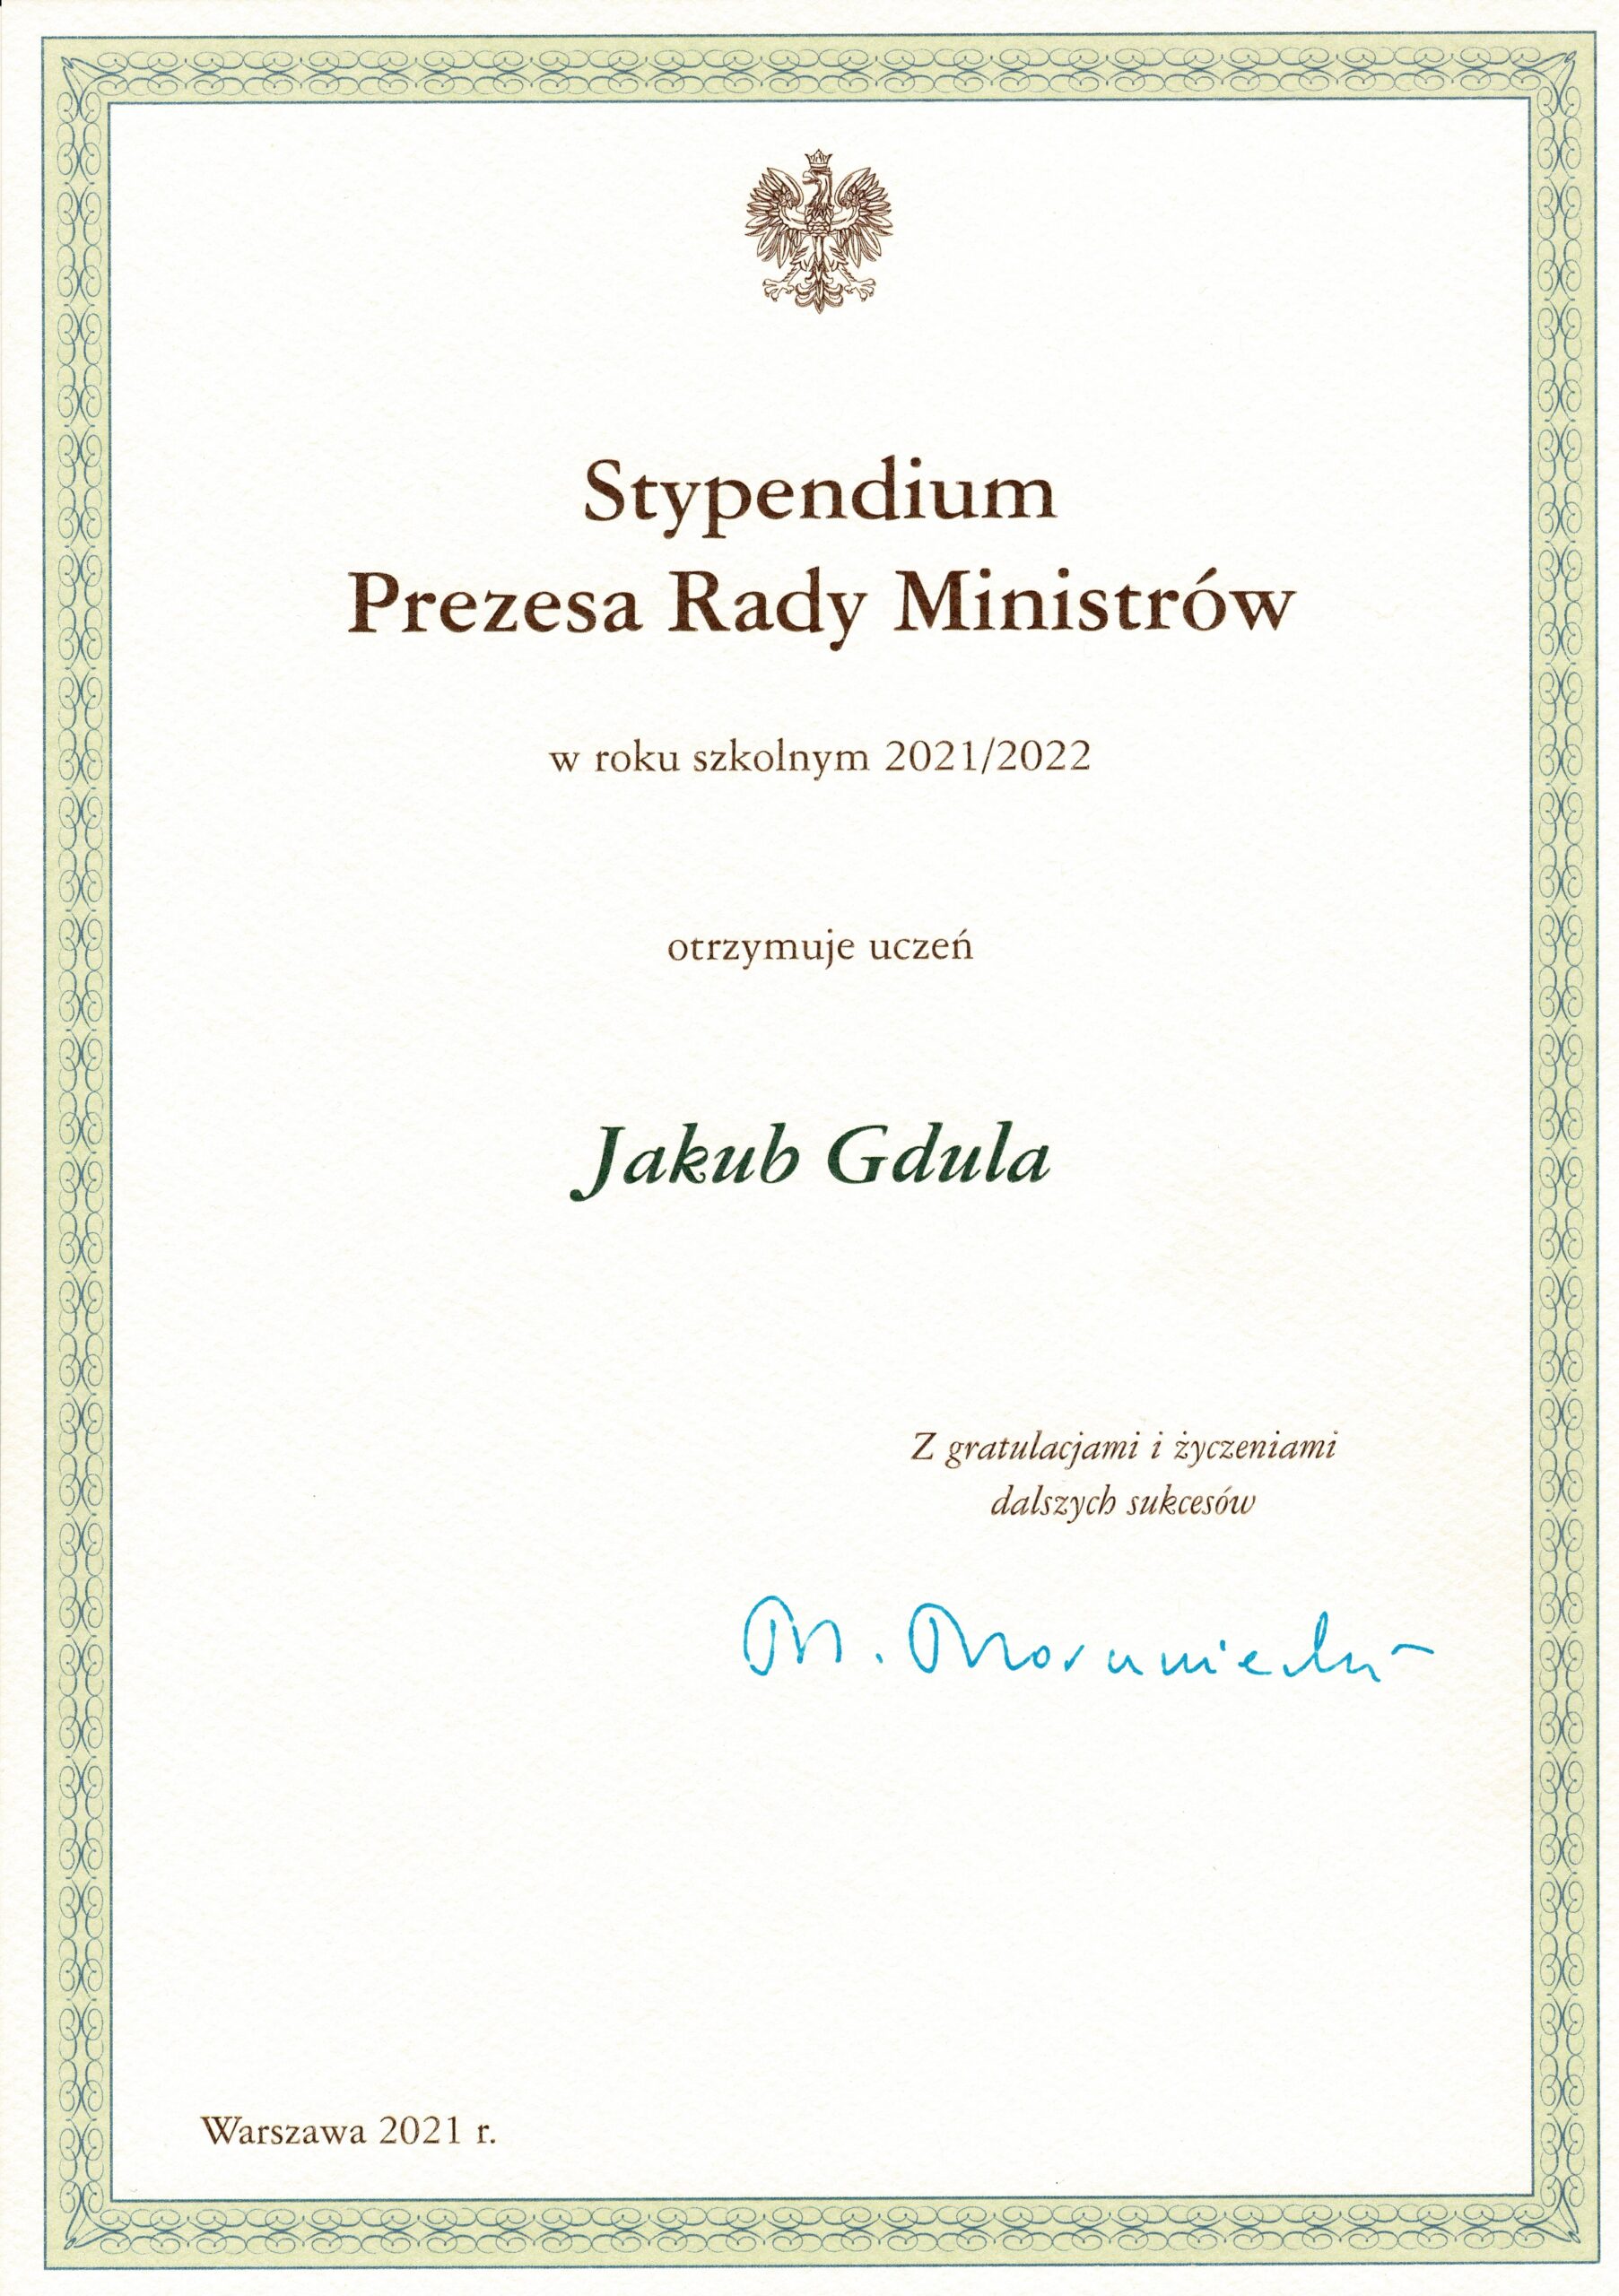 Stypendium Prezesa rady Ministrów 2021-2022 Jakub Gdula